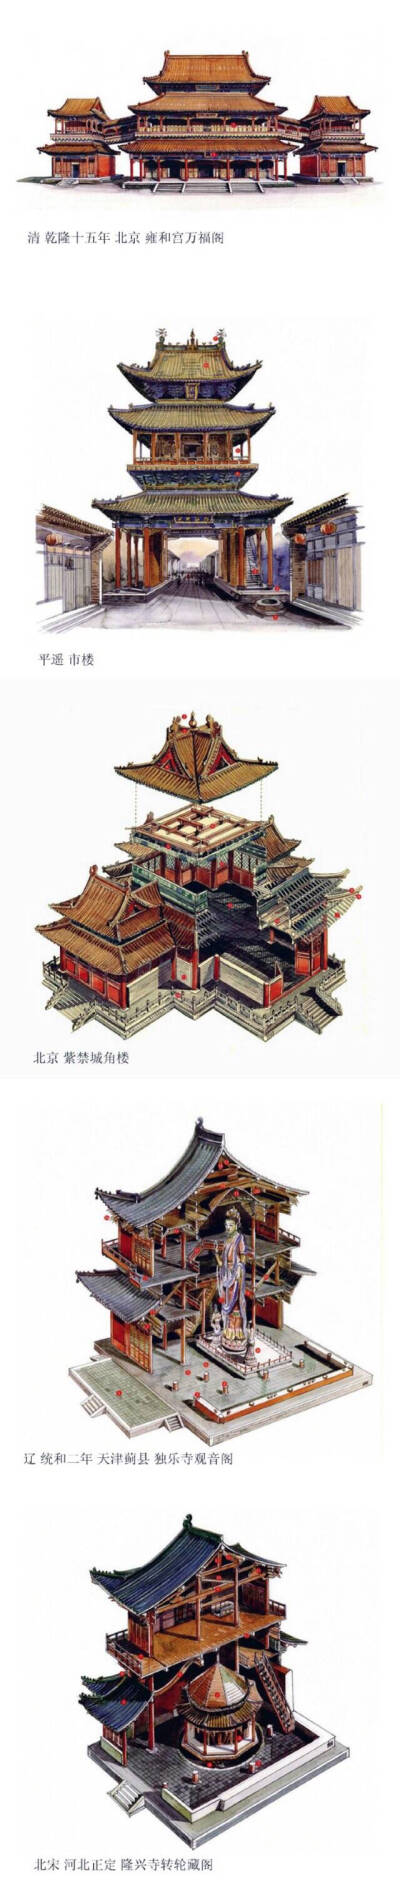 中国古建筑透视图,来自台湾李乾朗手绘